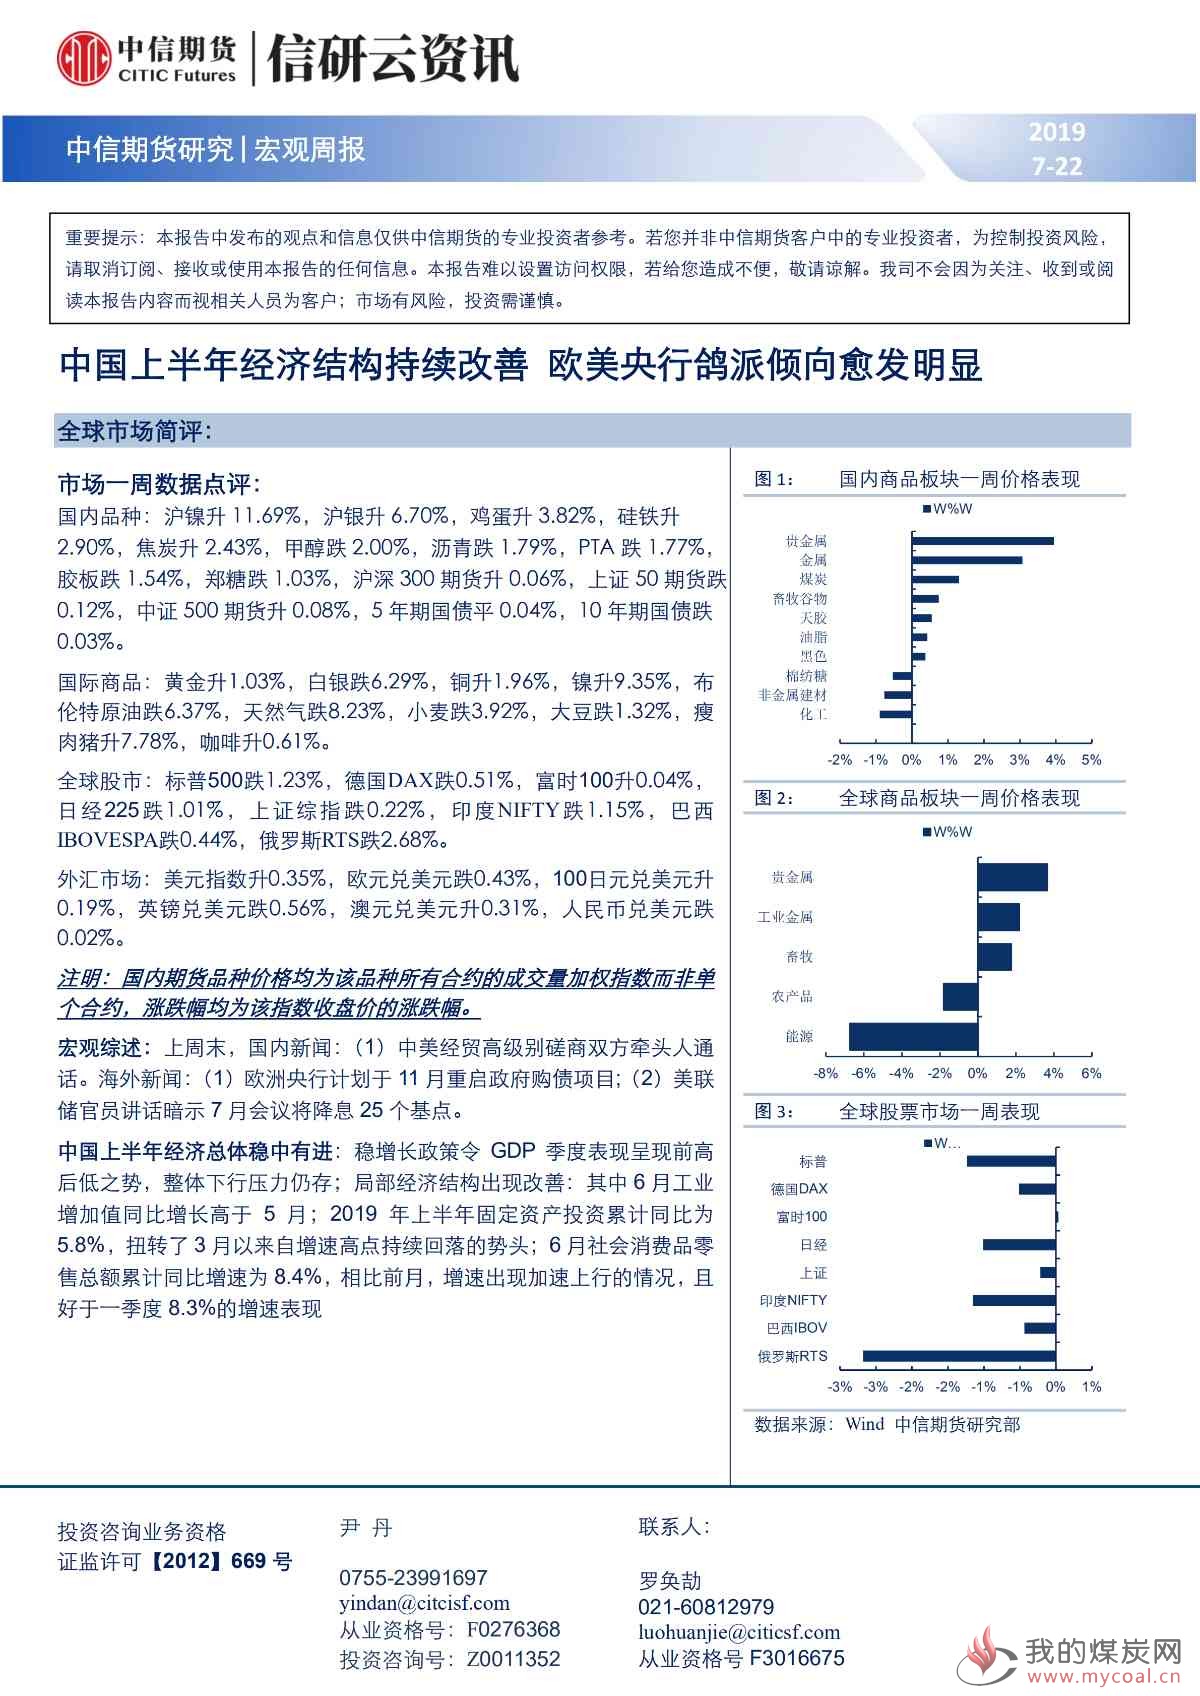 【中信期货宏观】中国上半年经济结构持续改善 欧美央行鸽派倾向愈发明显——周报20190722_00